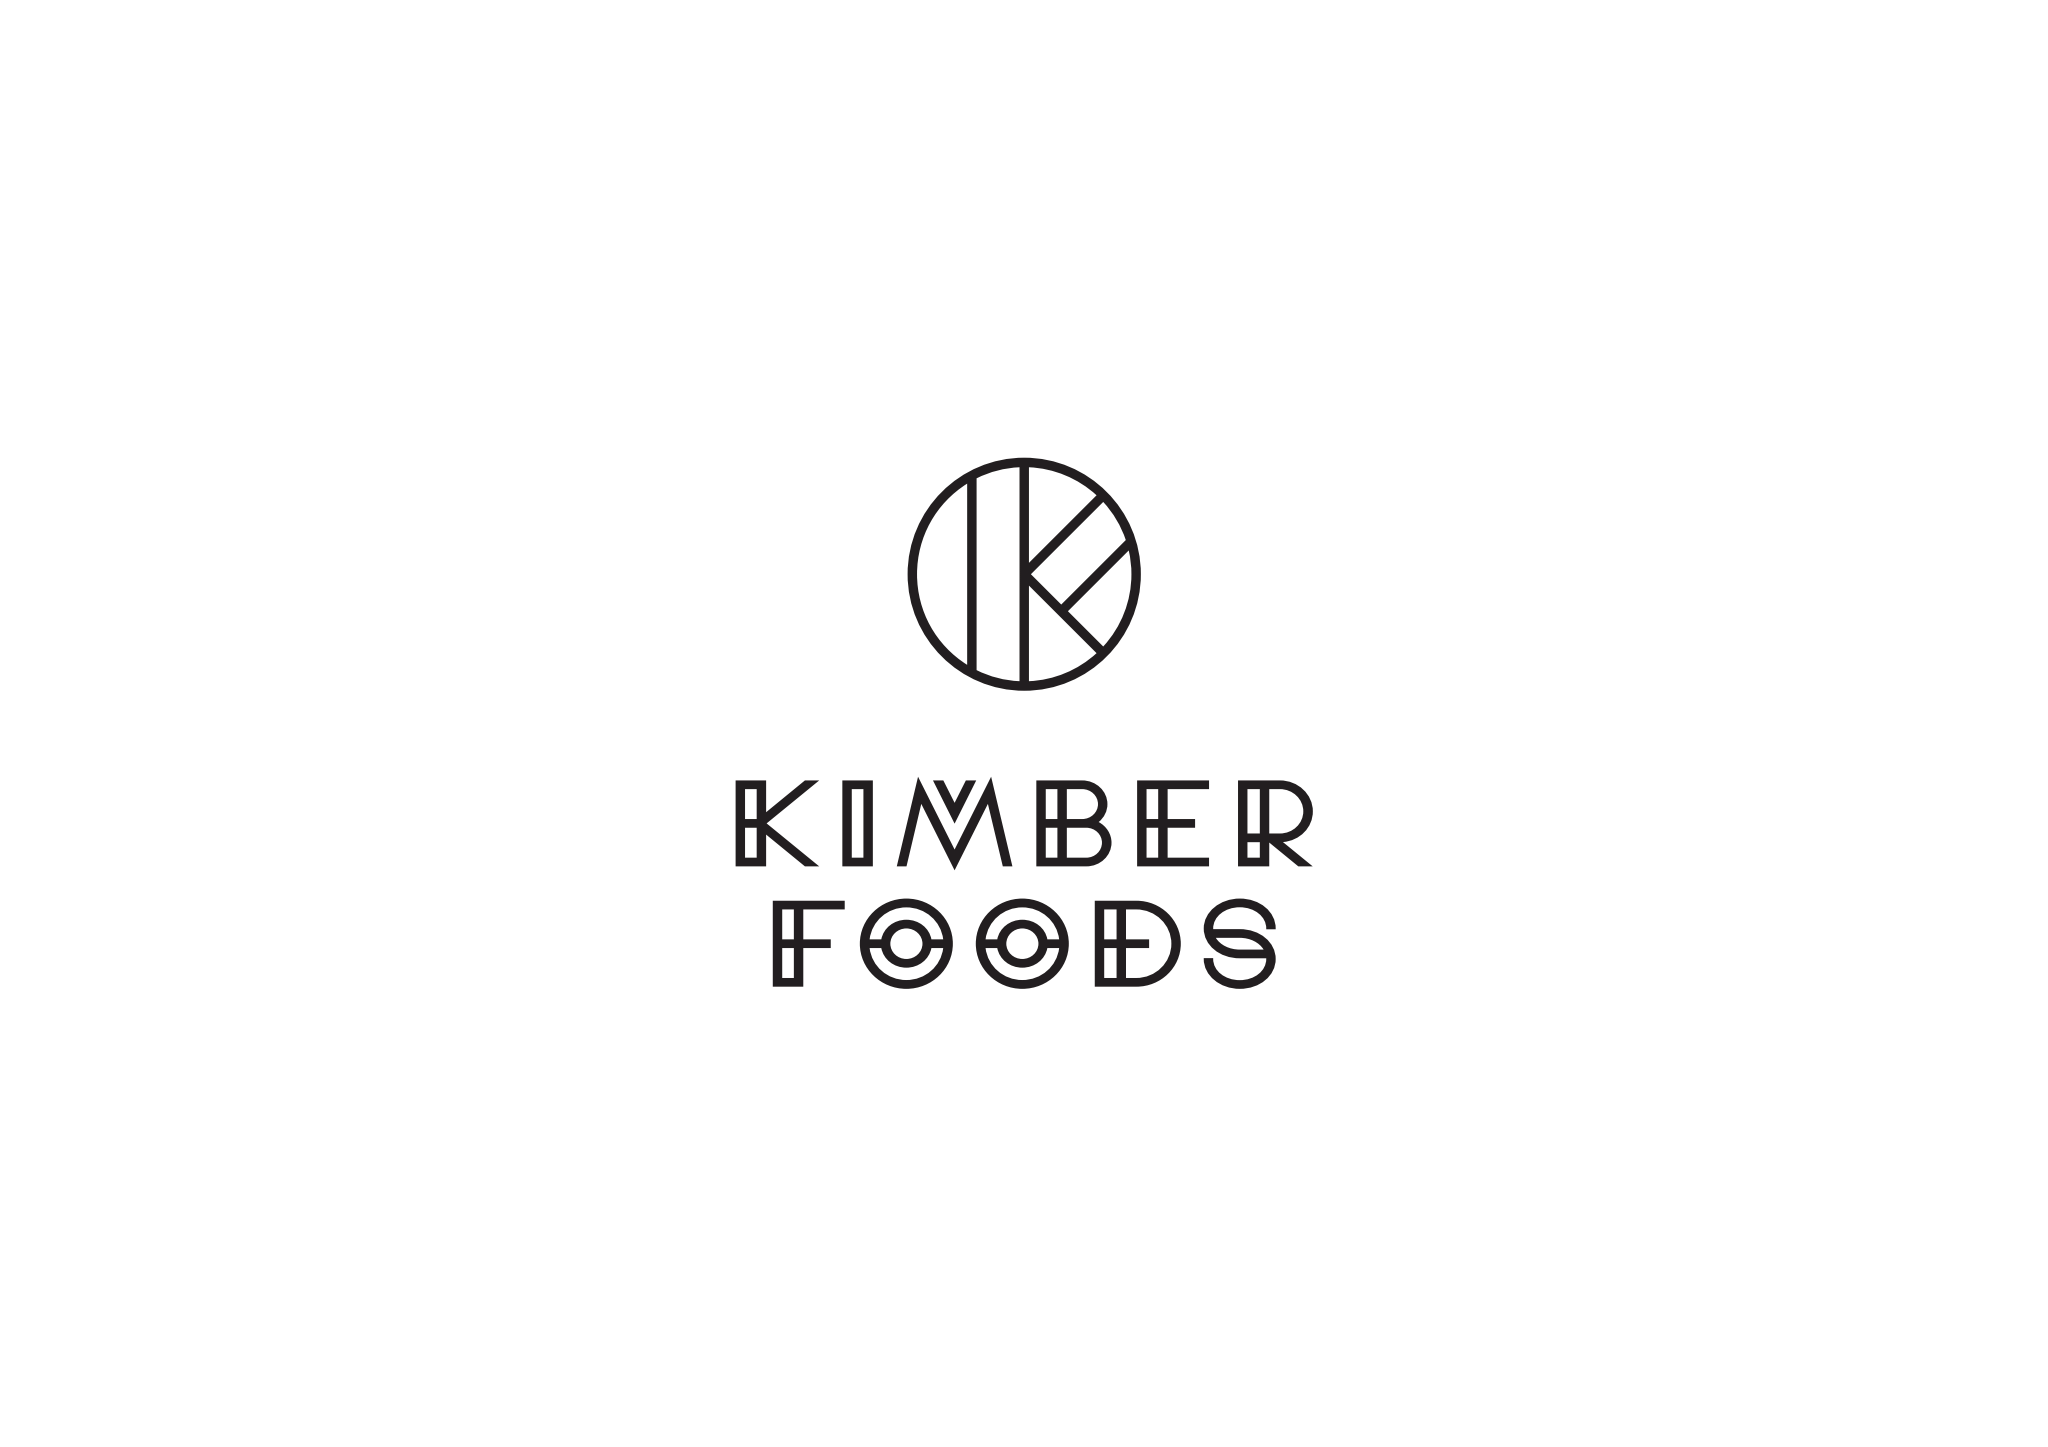 Kimber Foods logo Sort v1 CMYK.png